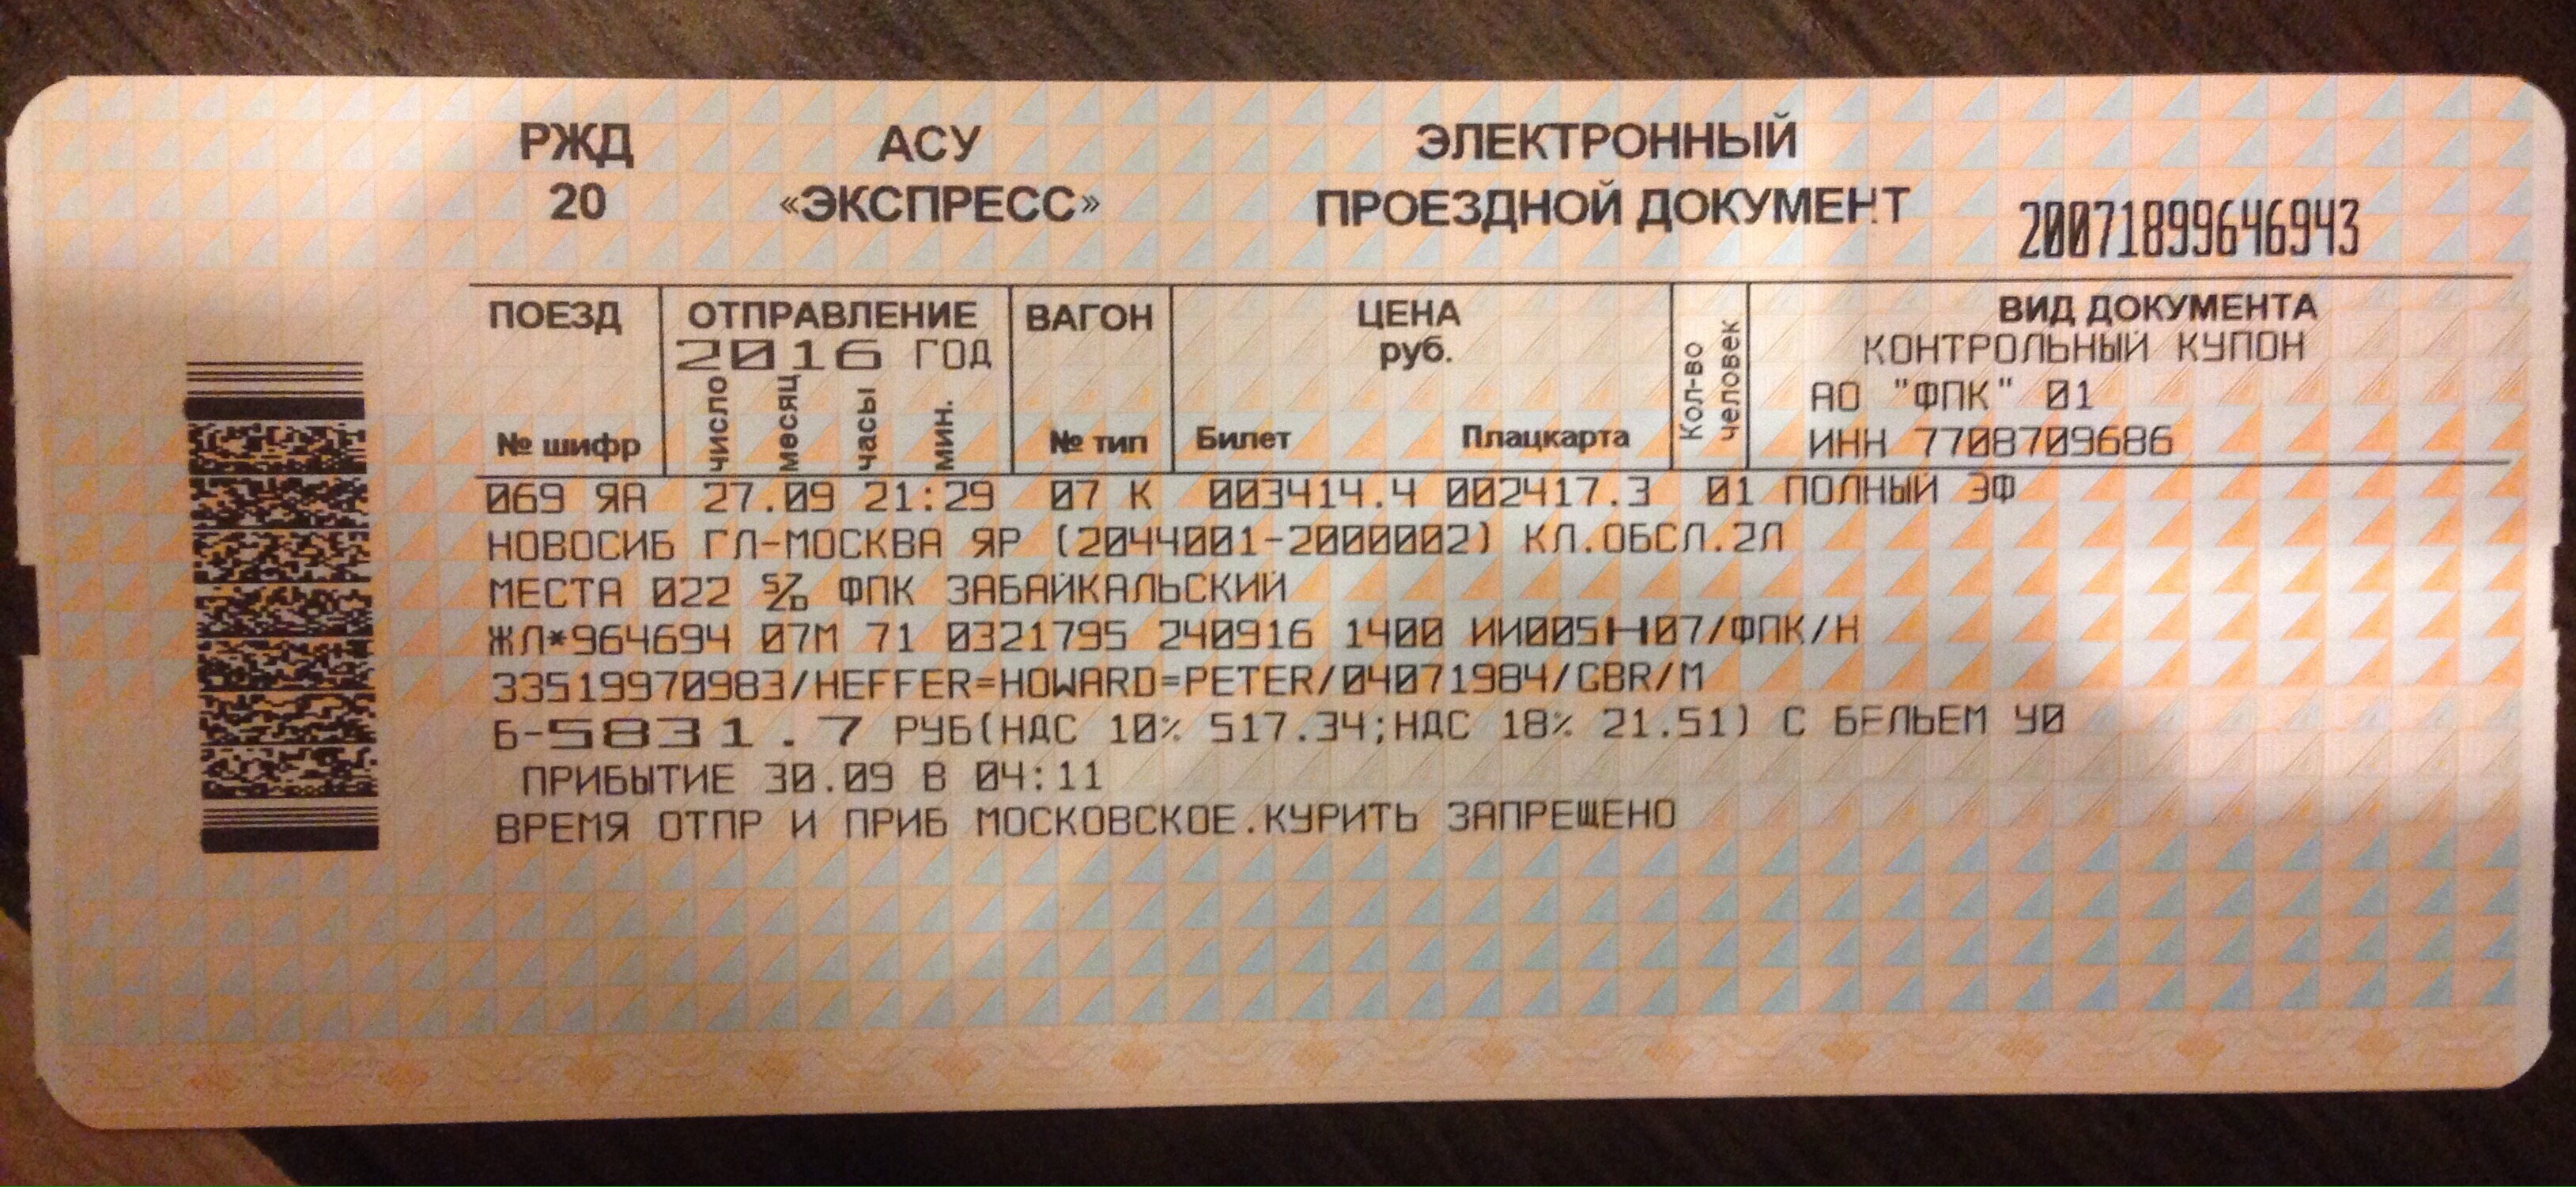 Купить билеты на московский поезд. Билеты РЖД. Билет АСУ экспресс. Билеты на поезд РЖД. Электронный проездной билет на поезд.